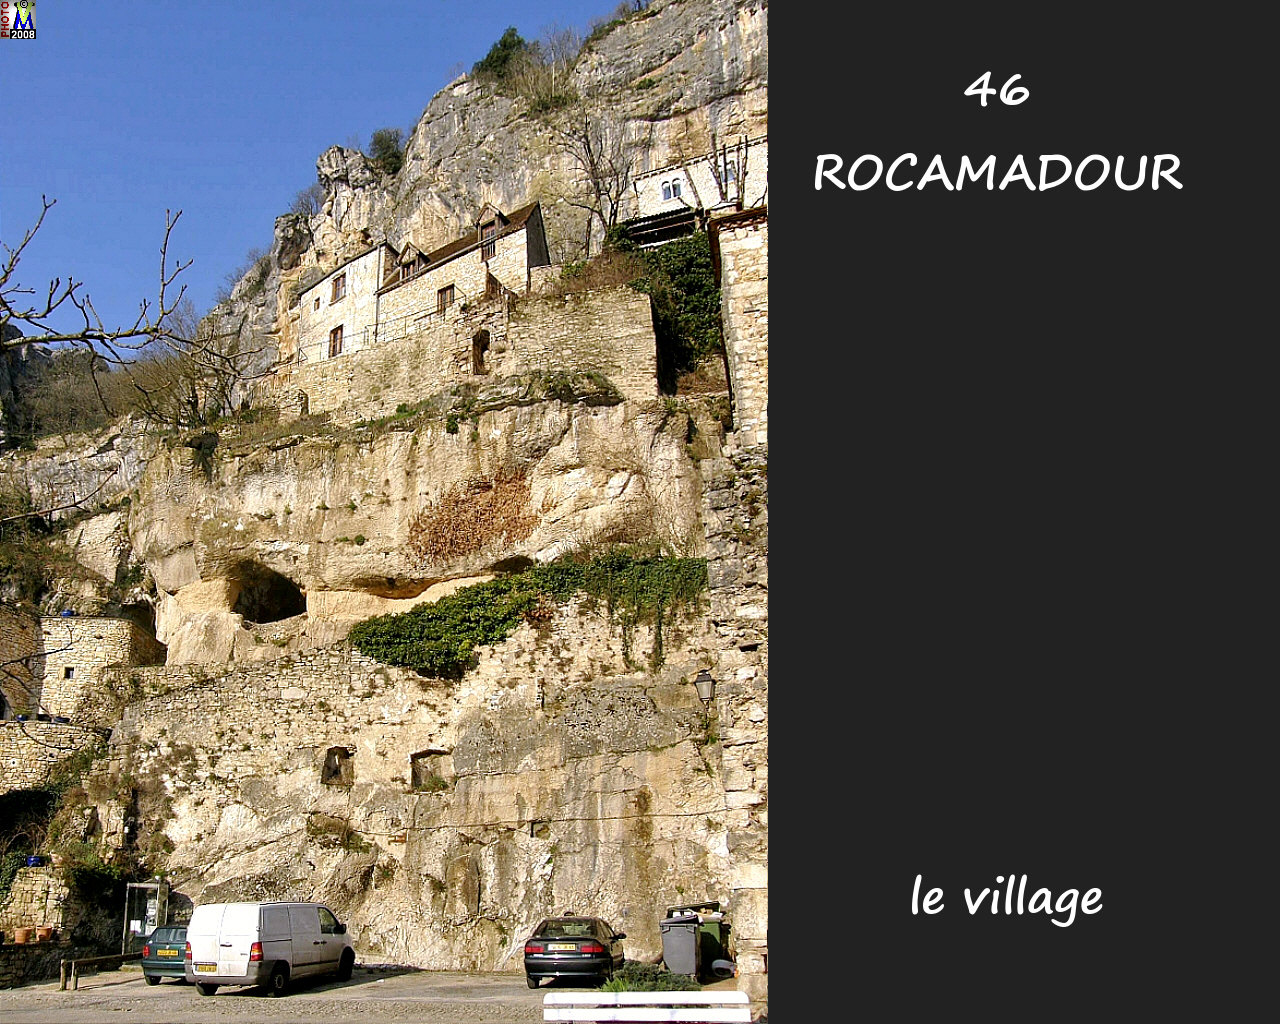 46ROCAMADOUR_village_124.jpg